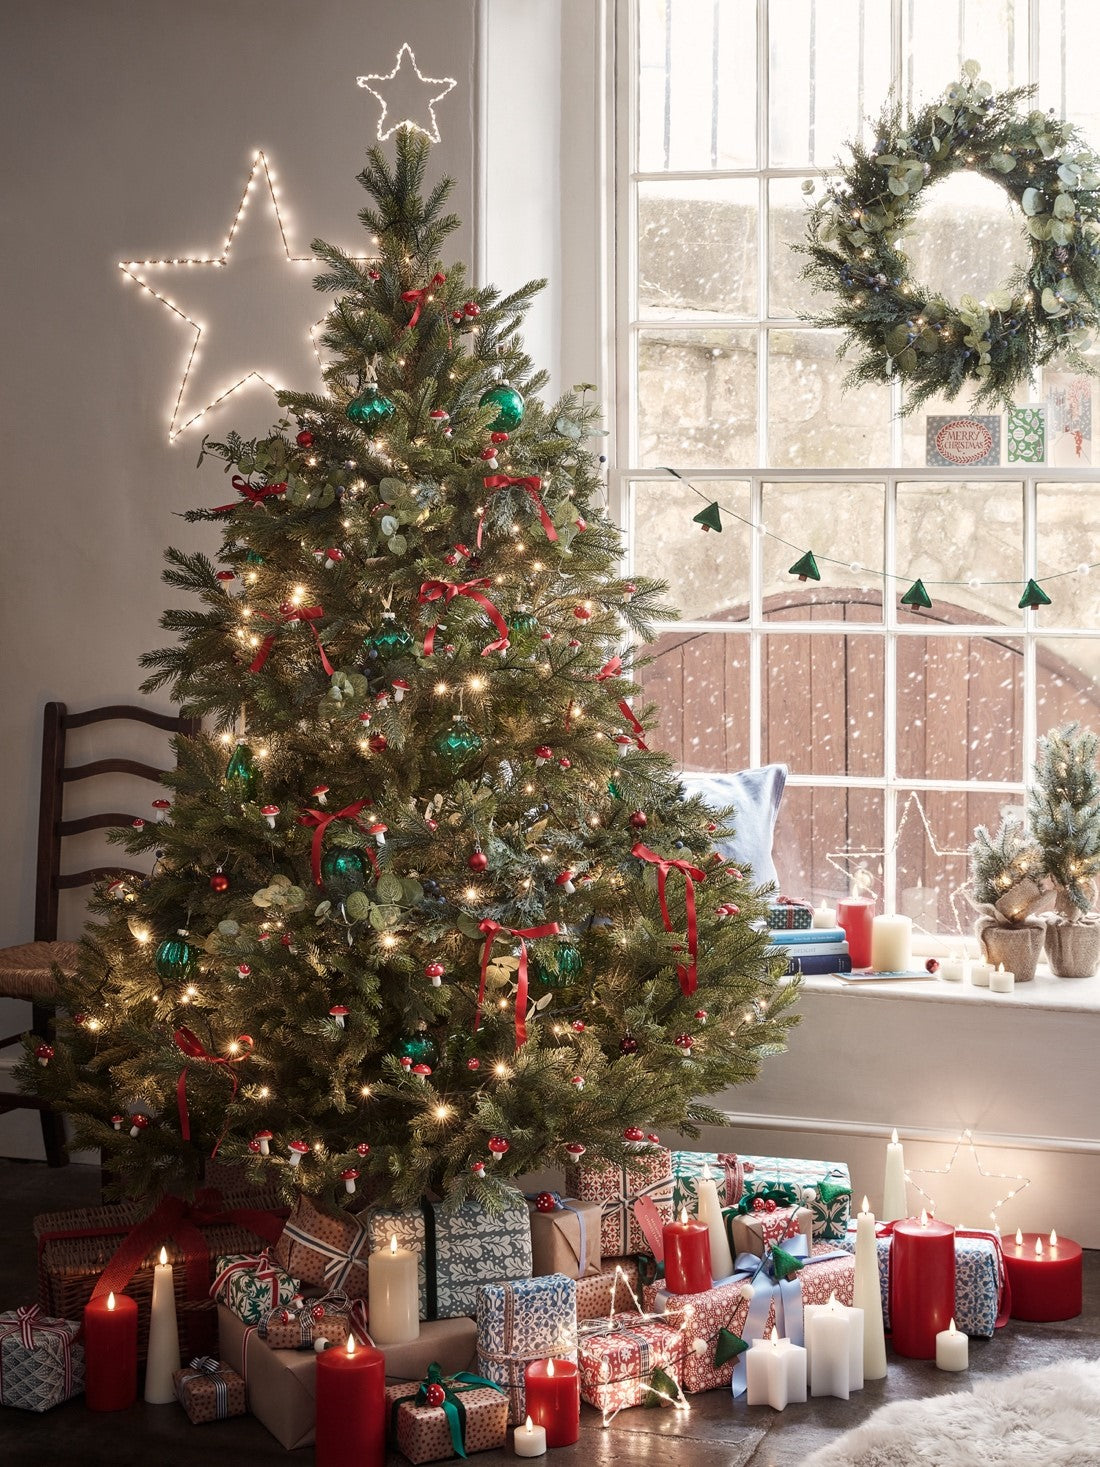 Christmas Tree Lights | LED Christmas Tree Lights – Lights4fun.co.uk